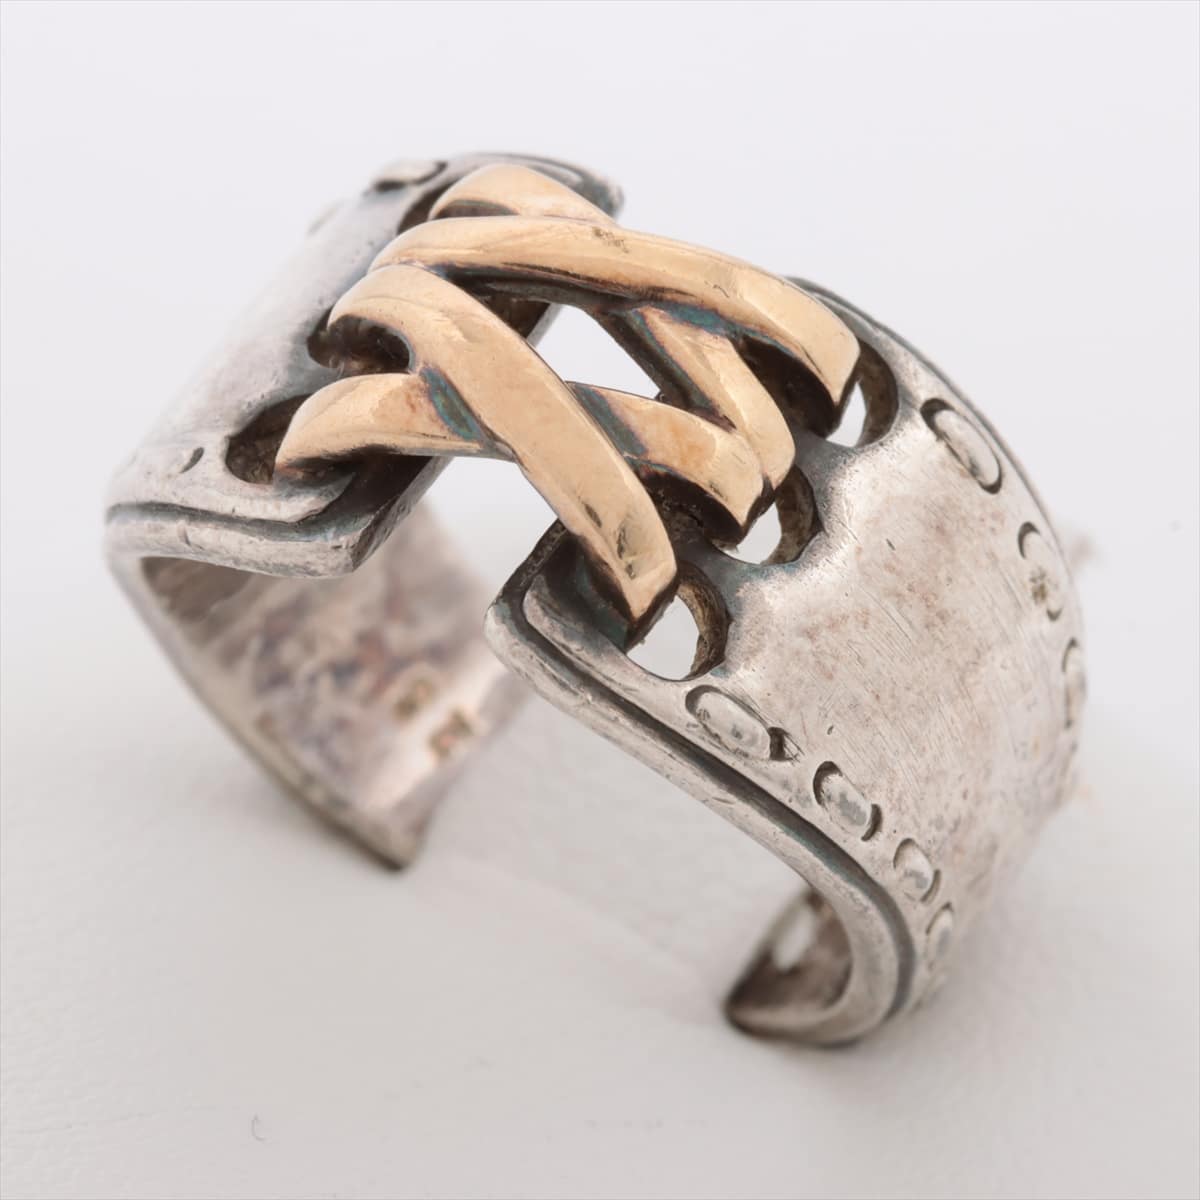 Hermès Mexican Ring rings 925×750 7.9g Silver